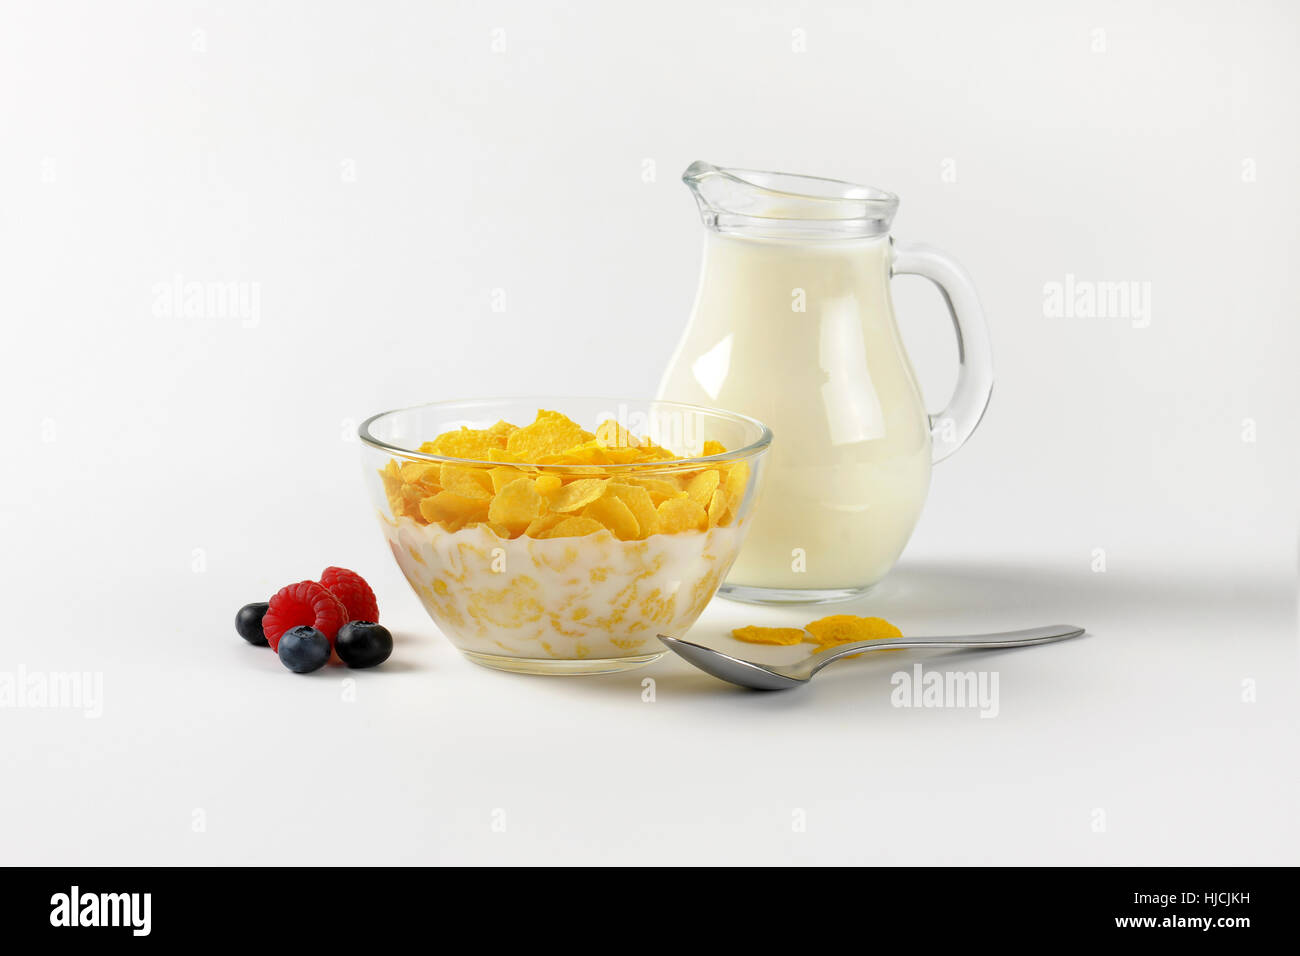 Schüssel mit Cornflakes und Krug Milch auf Wollweiß Hintergrund mit Schatten Stockfoto